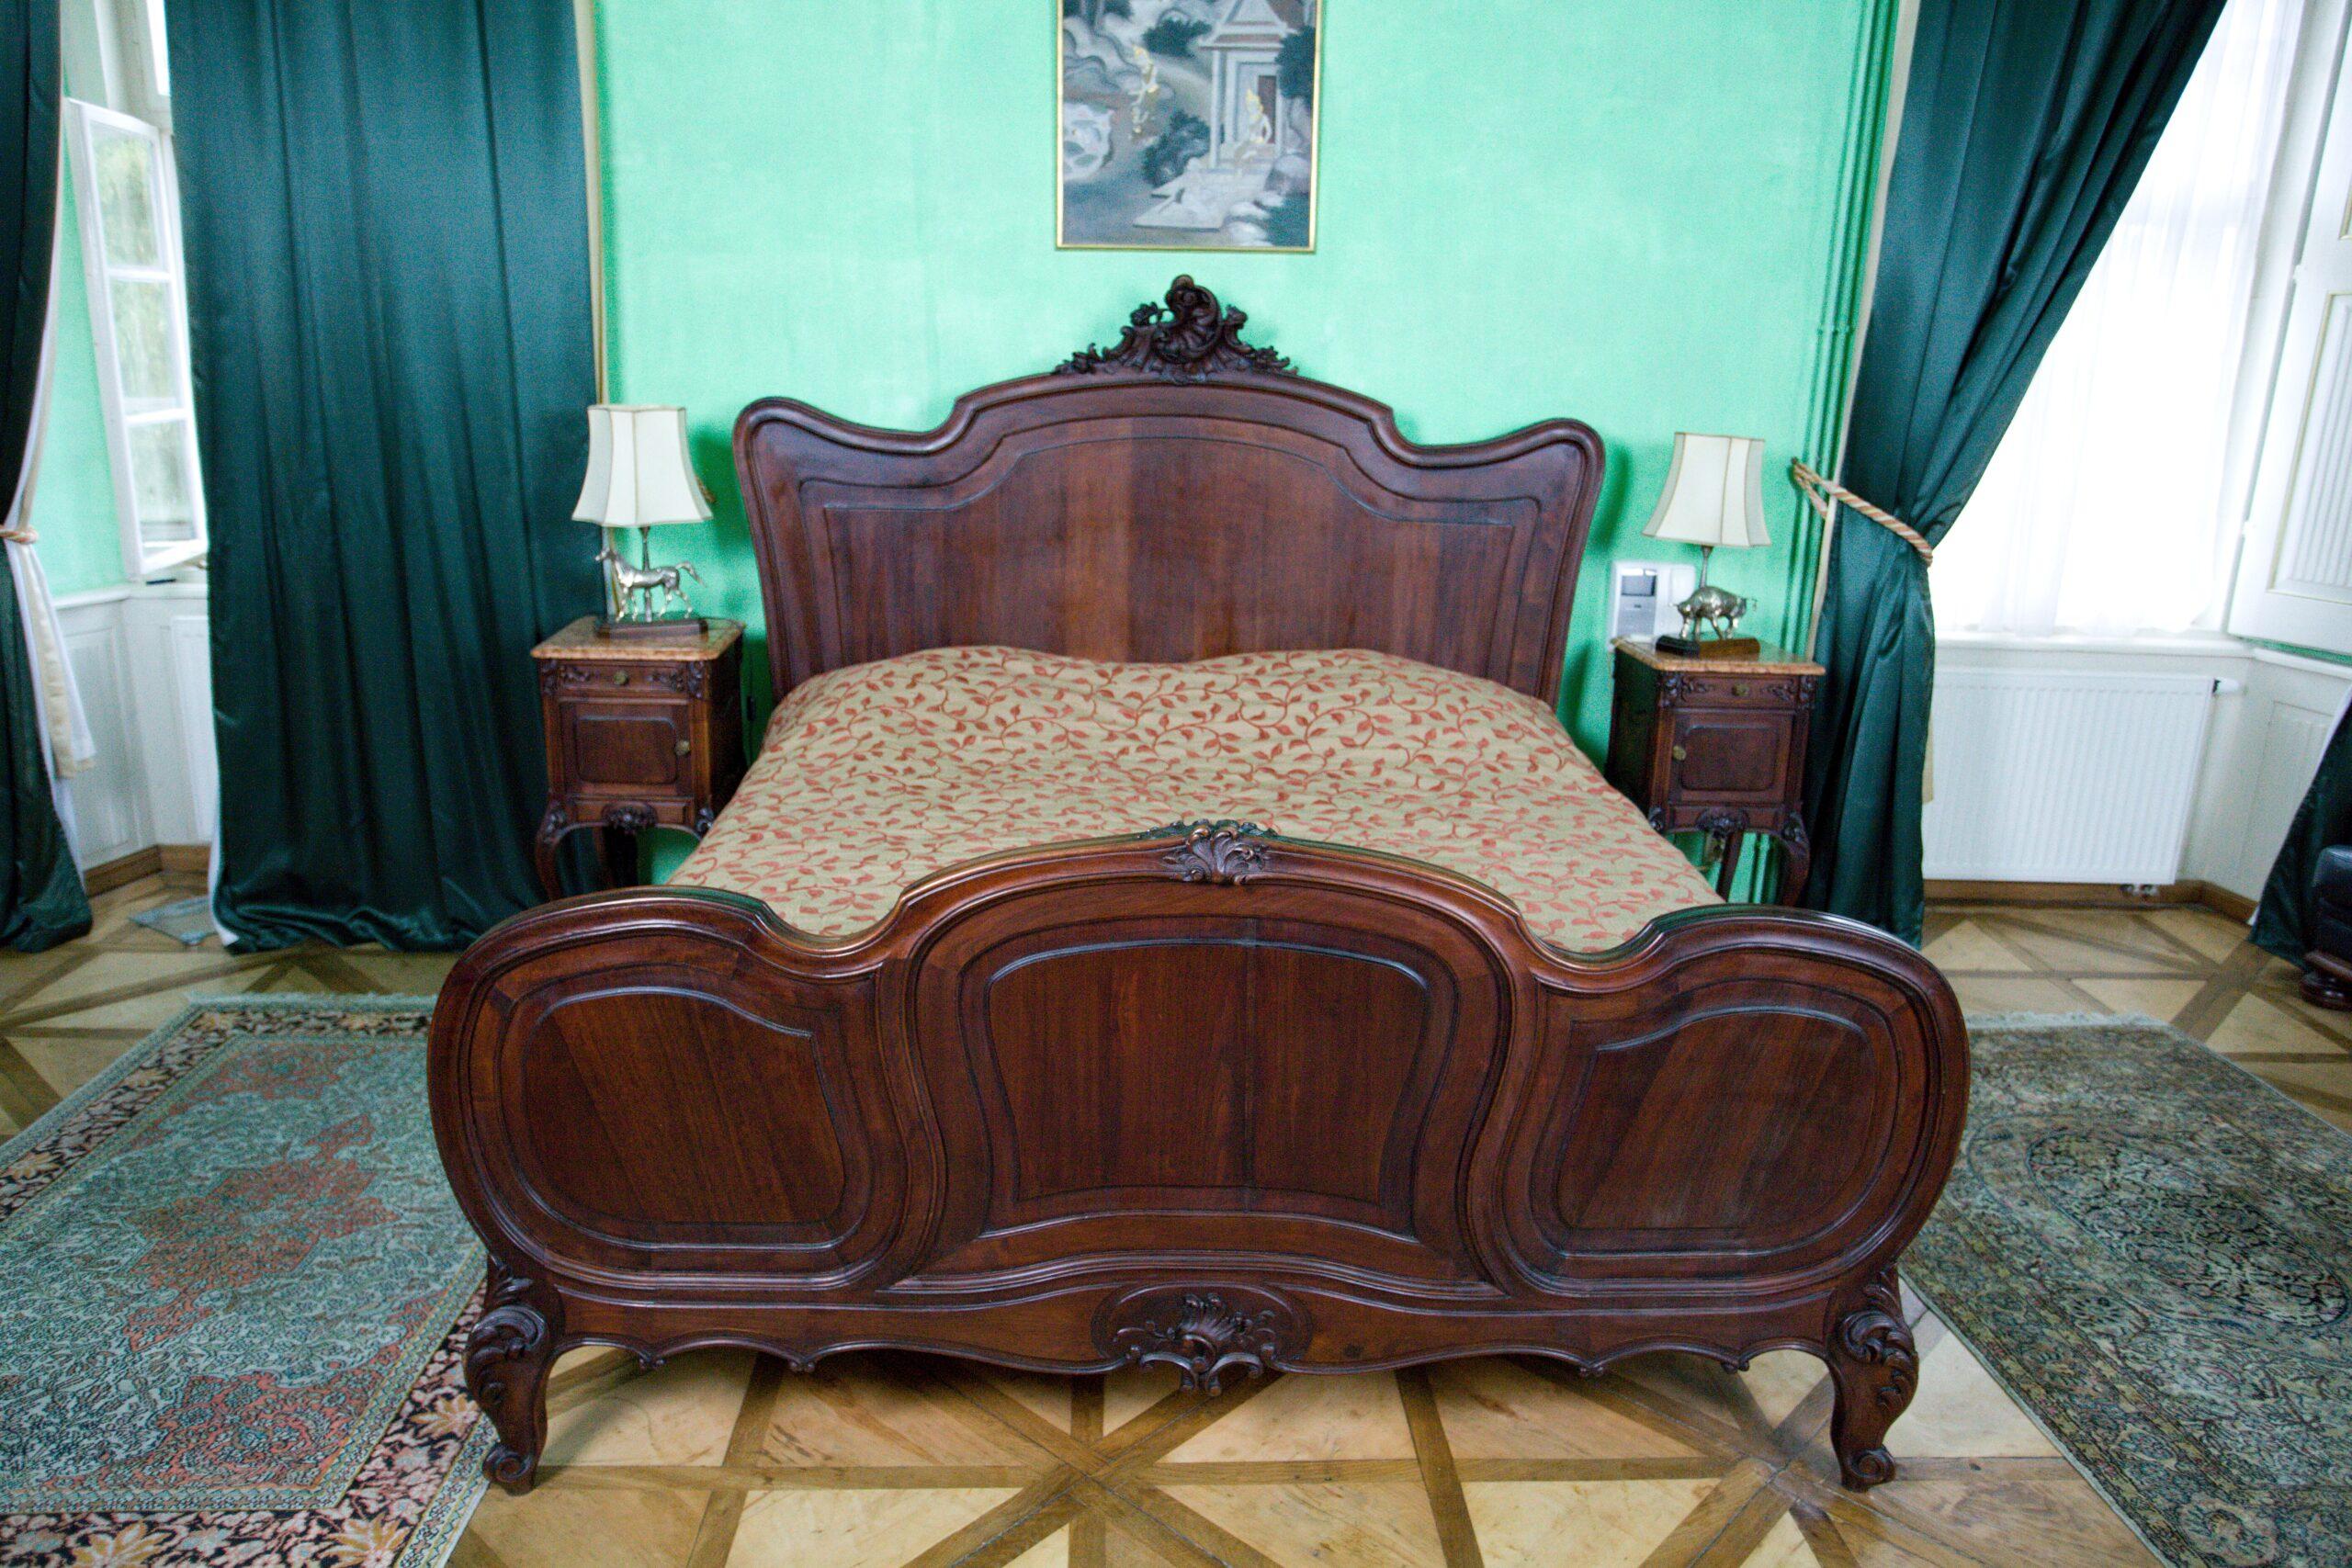 Rococo A 19th century rococo castle mirror bedroom For Sale